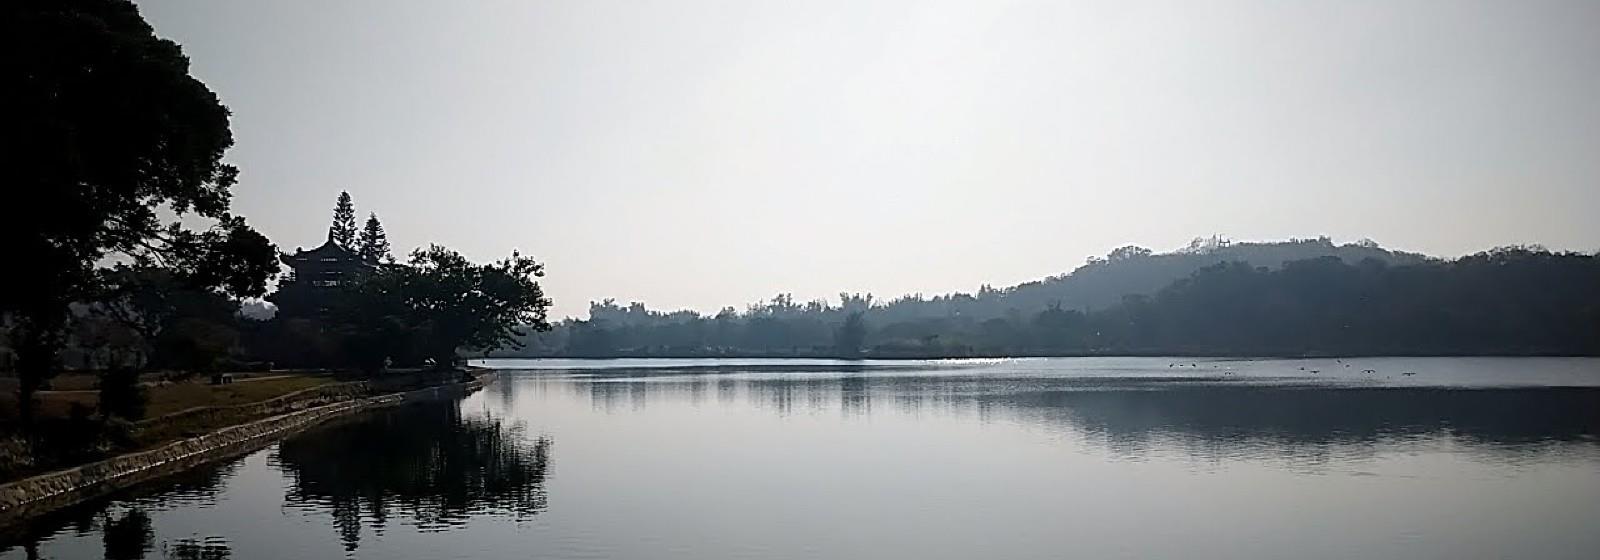 古崗湖